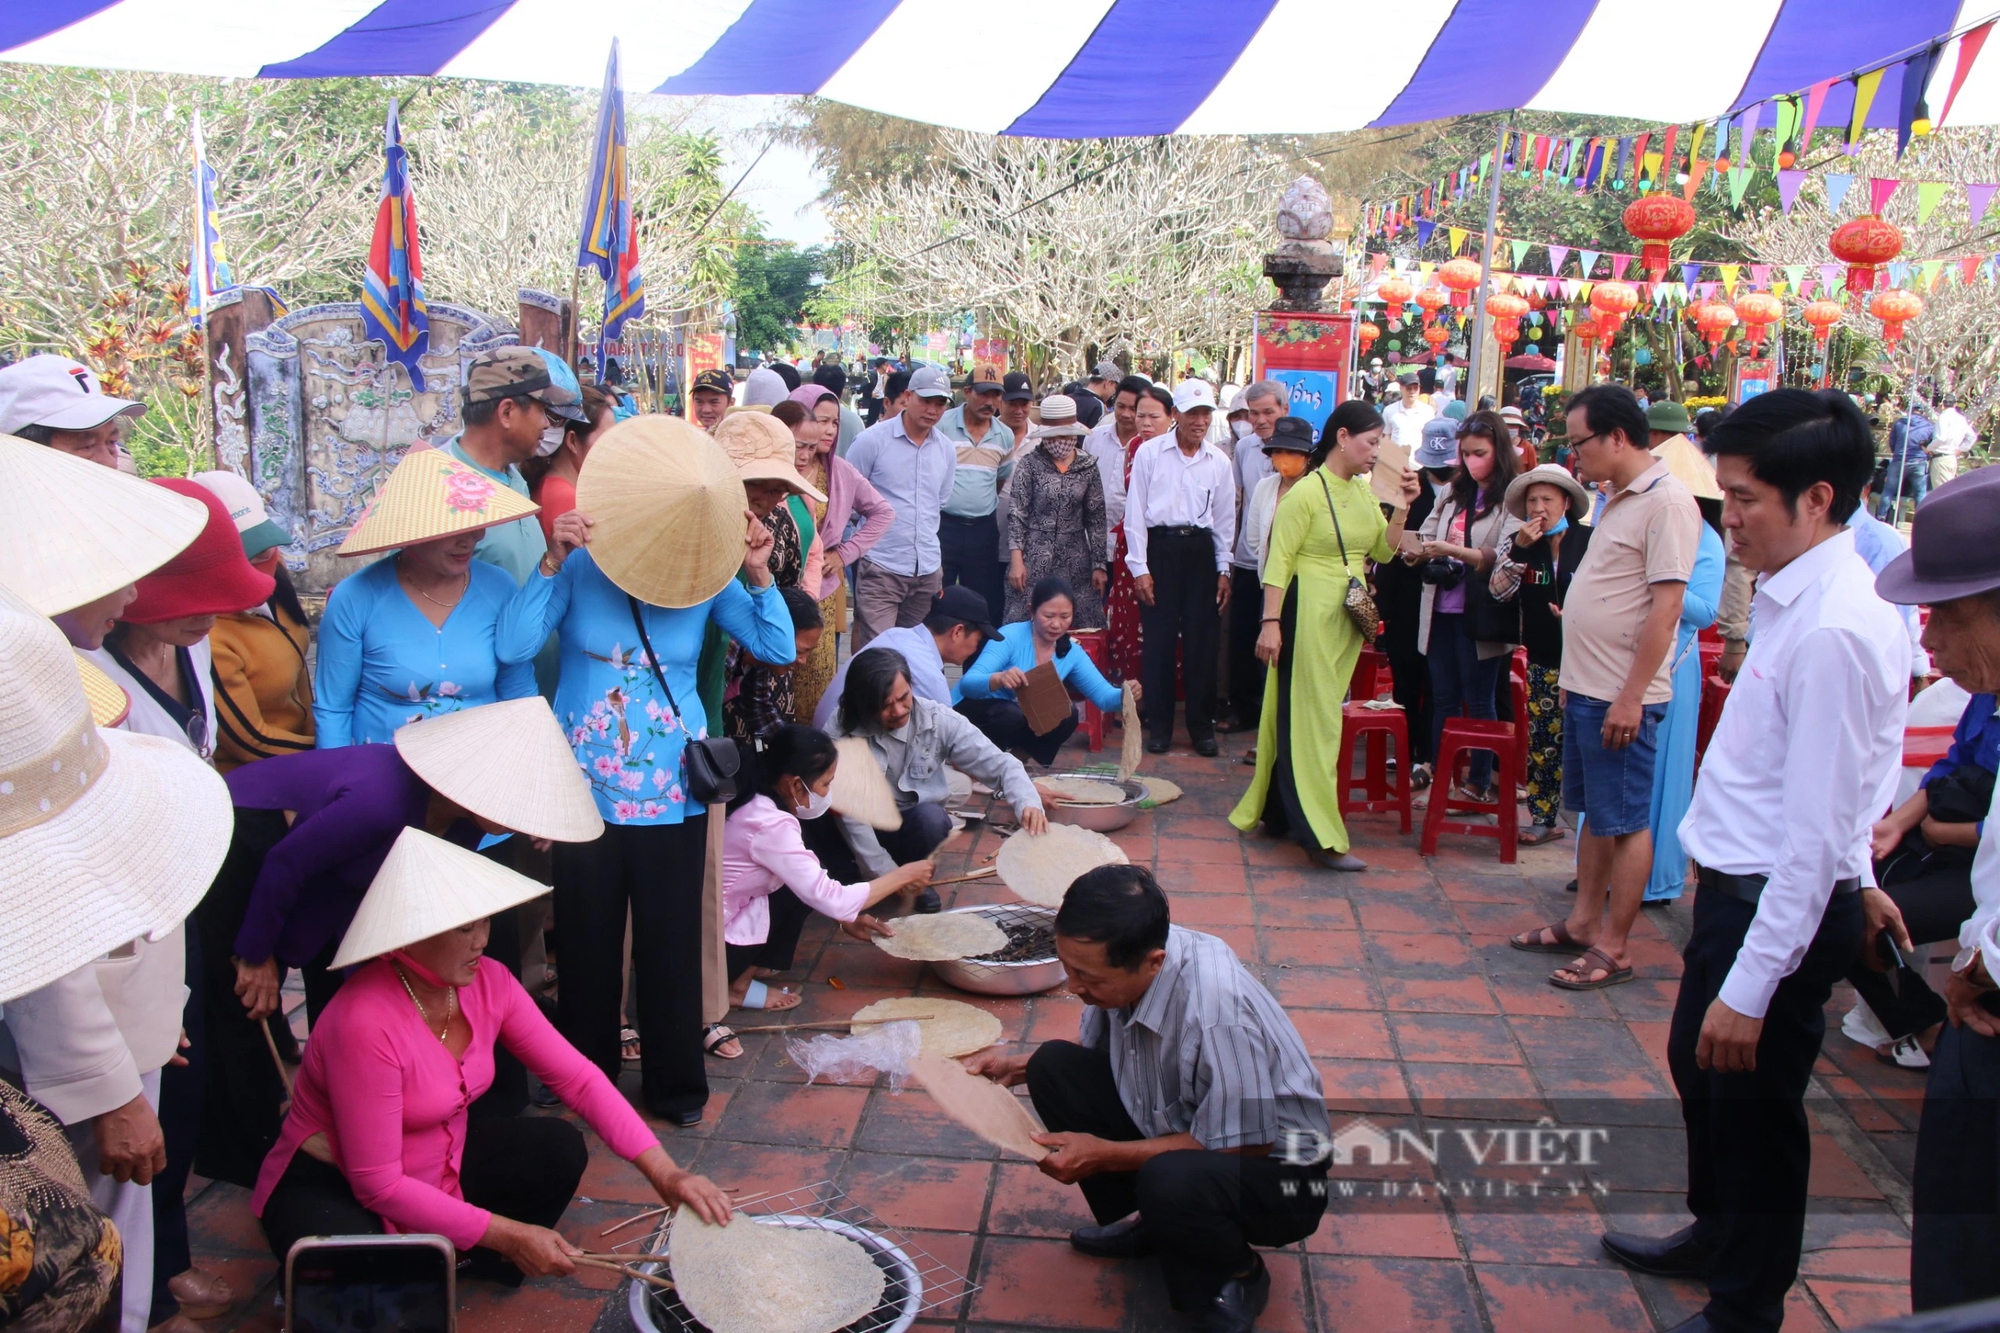 
Người dân, du khách nô nức nướng bánh tráng, hô bài chòi... tại làng cổ ở Đà Nẵng- Ảnh 1.